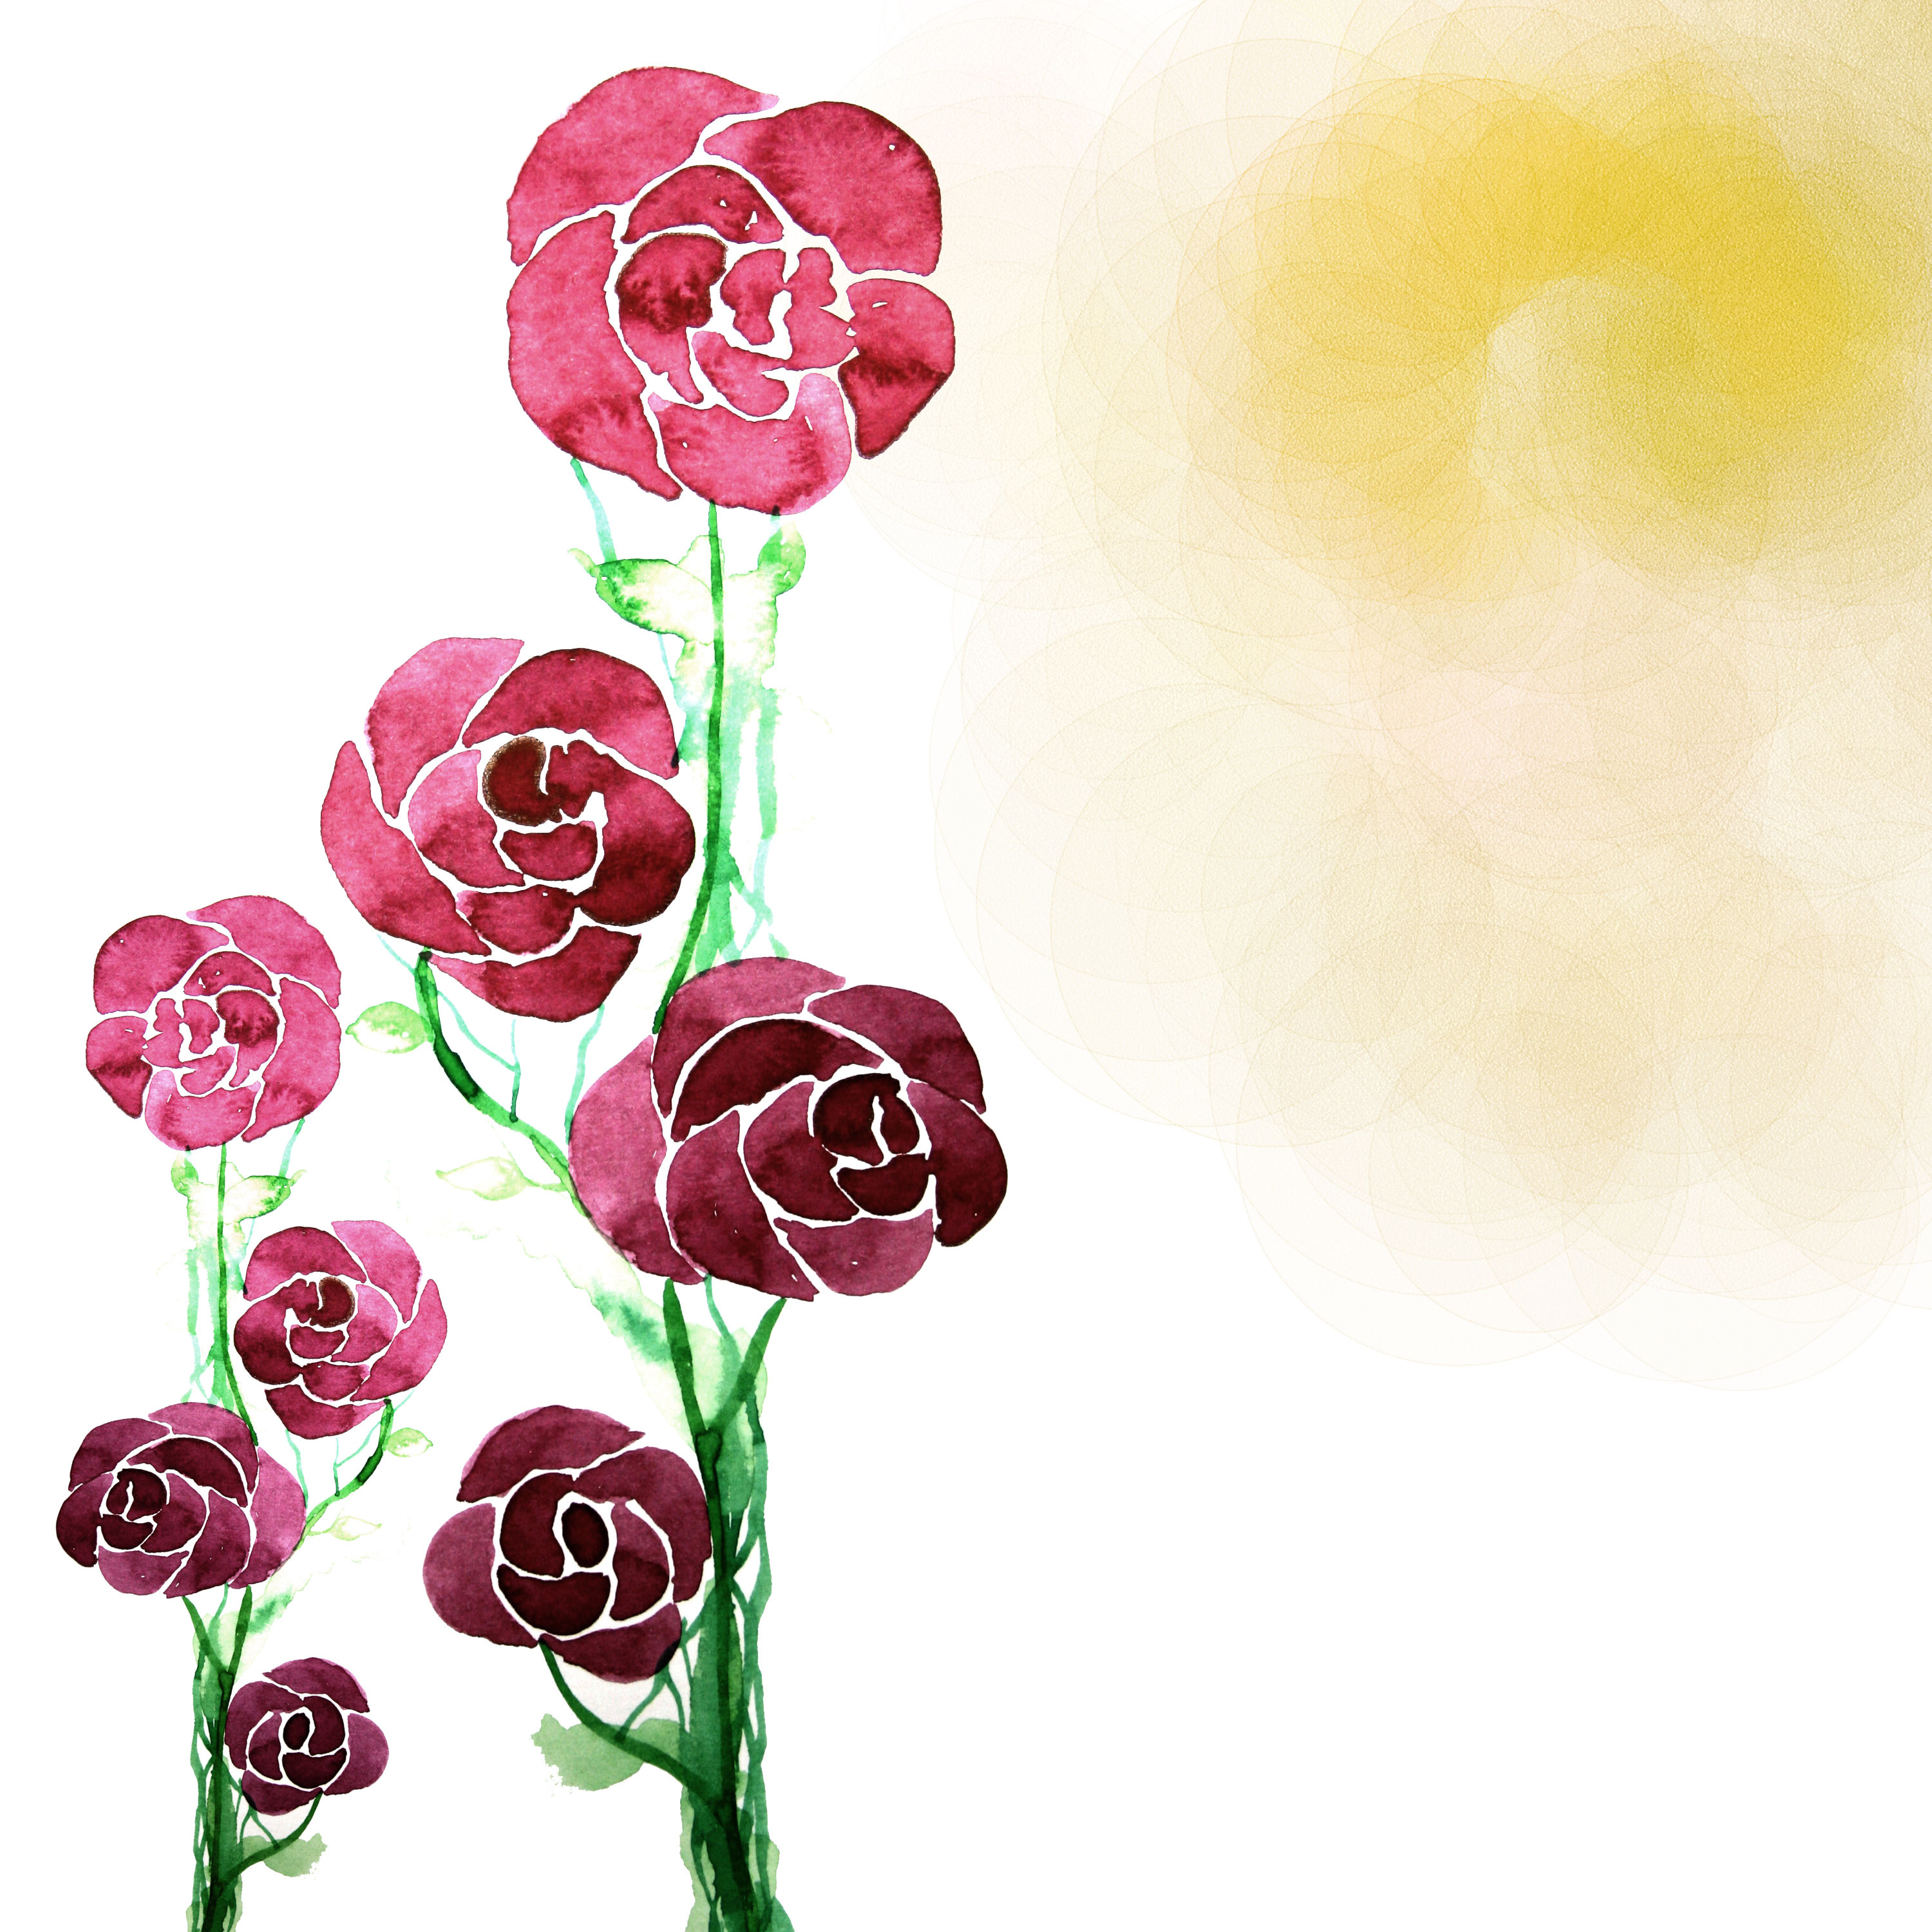 バラの画像・イラスト『壁紙・背景用』／No.655『赤紫・バラ・水彩画風』